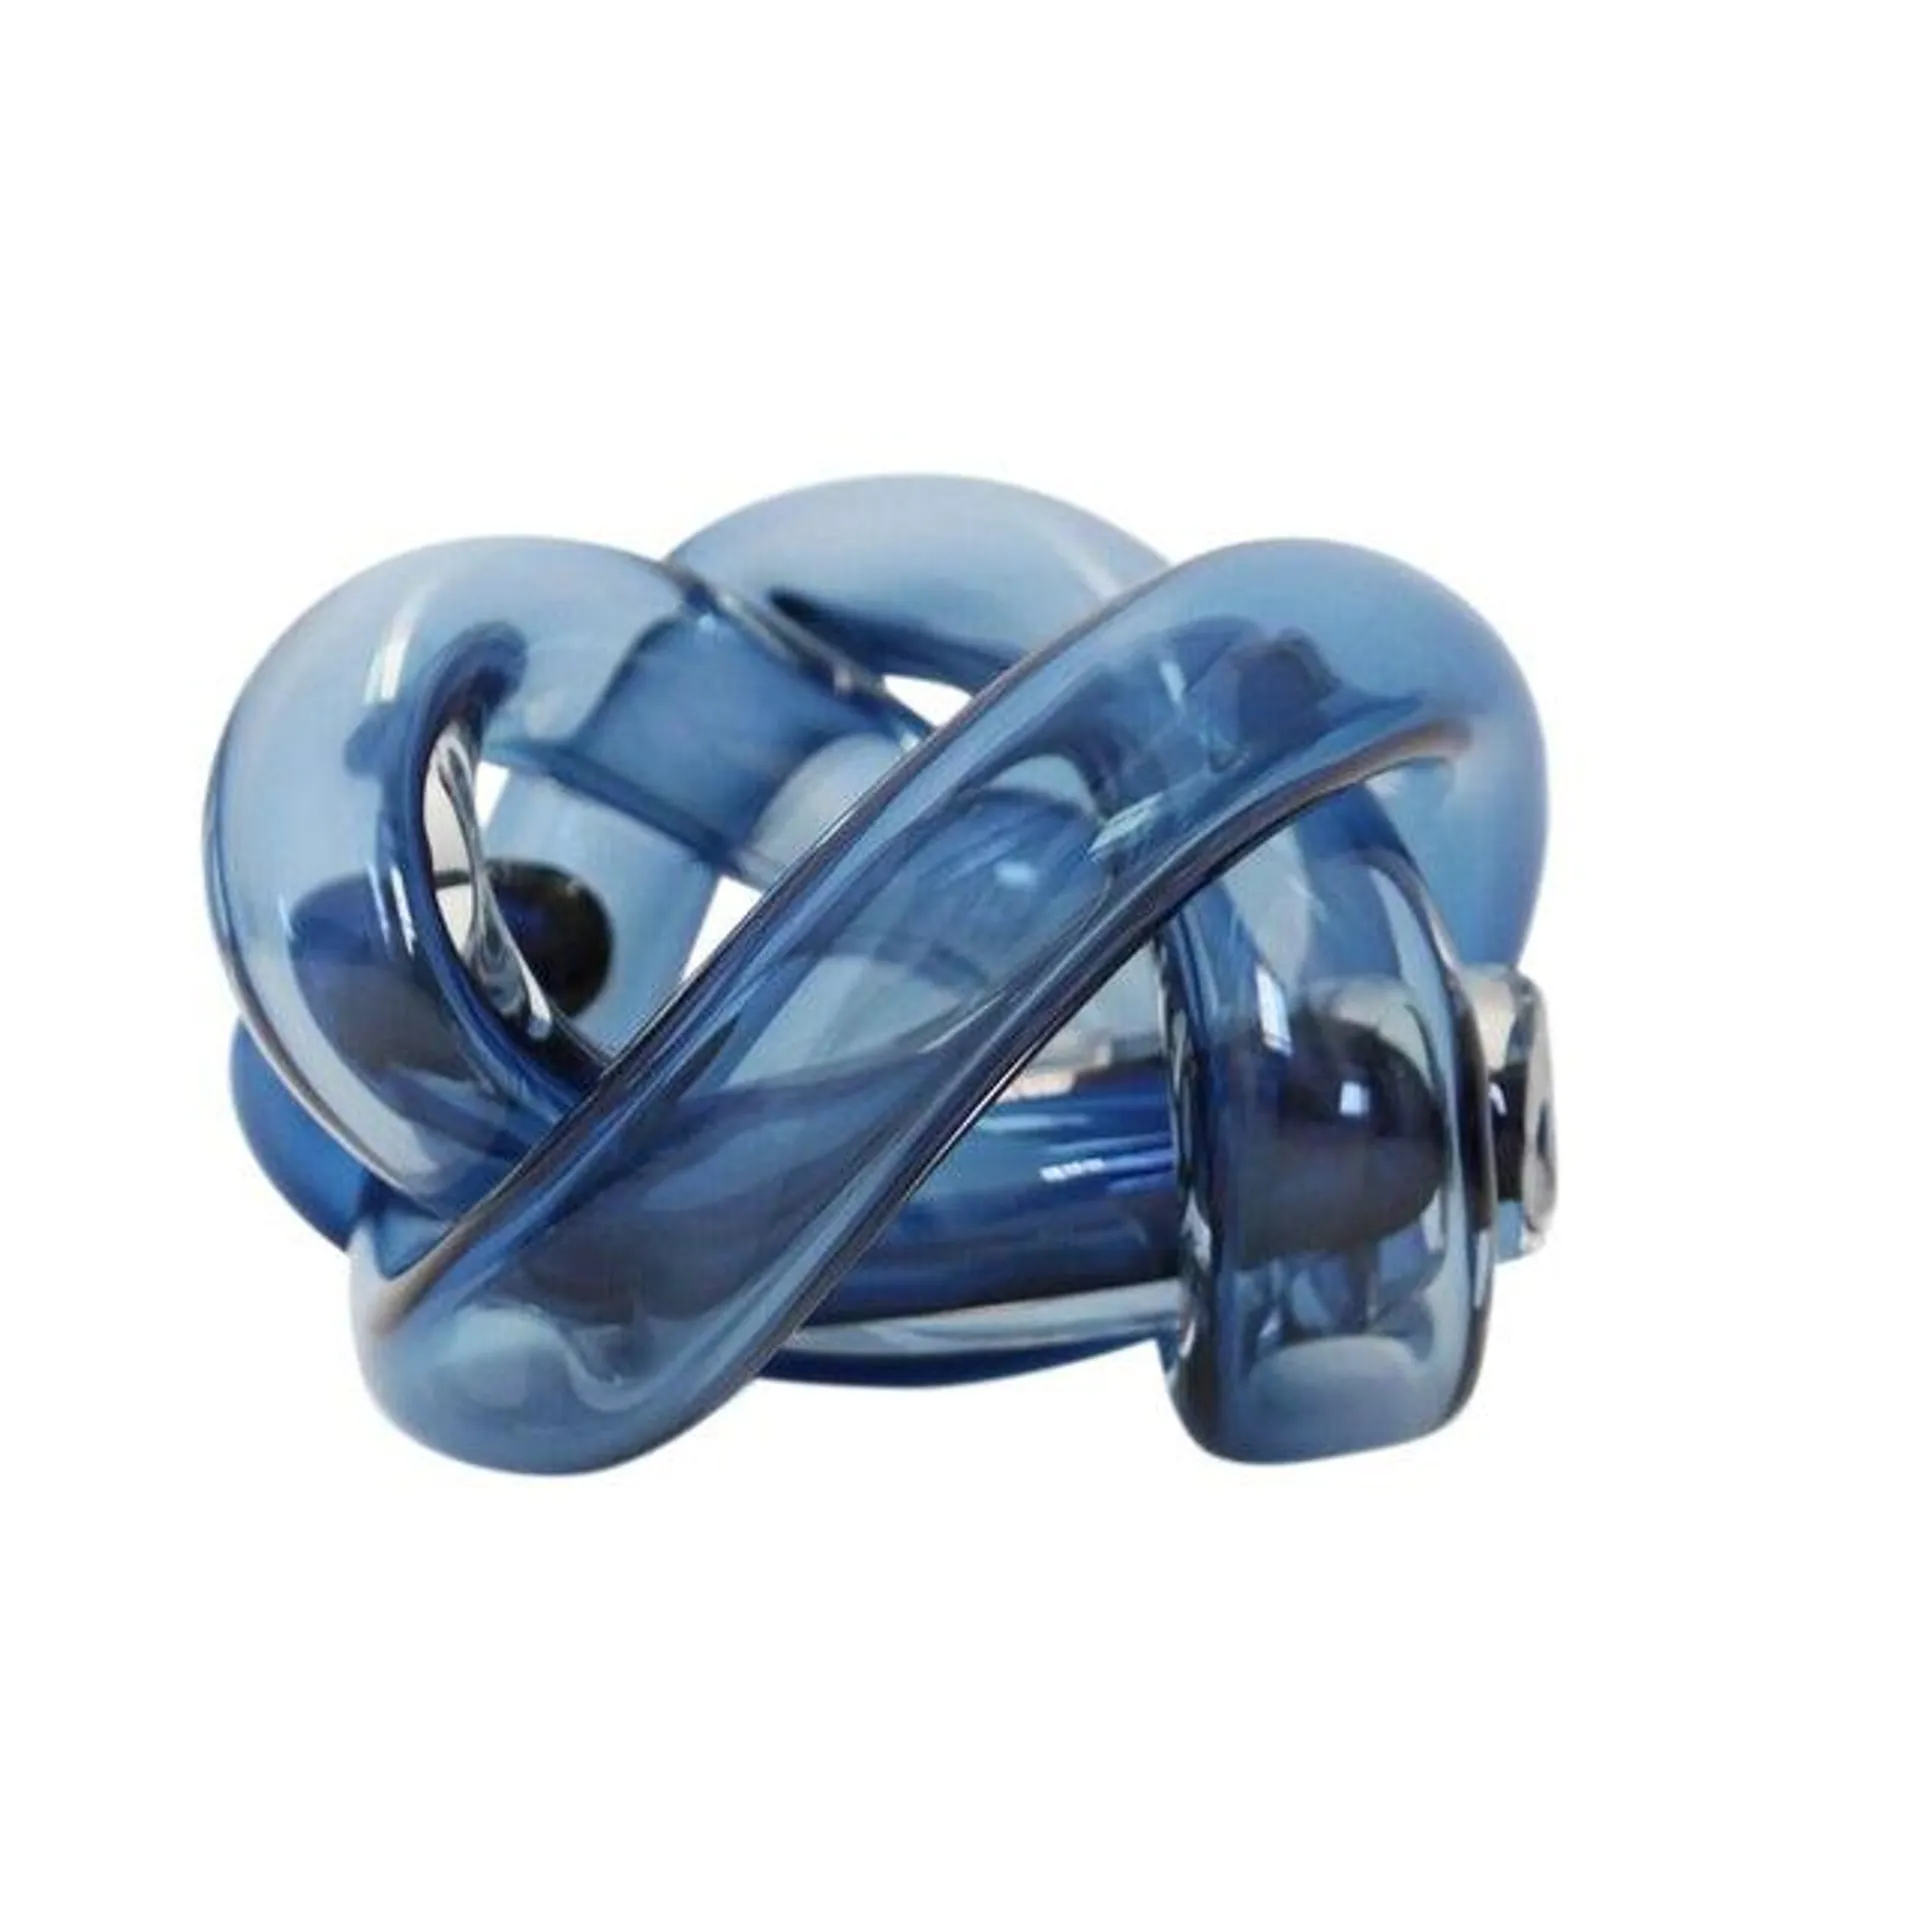 SkLO Wrap Object Glass Knot - Steel Blue